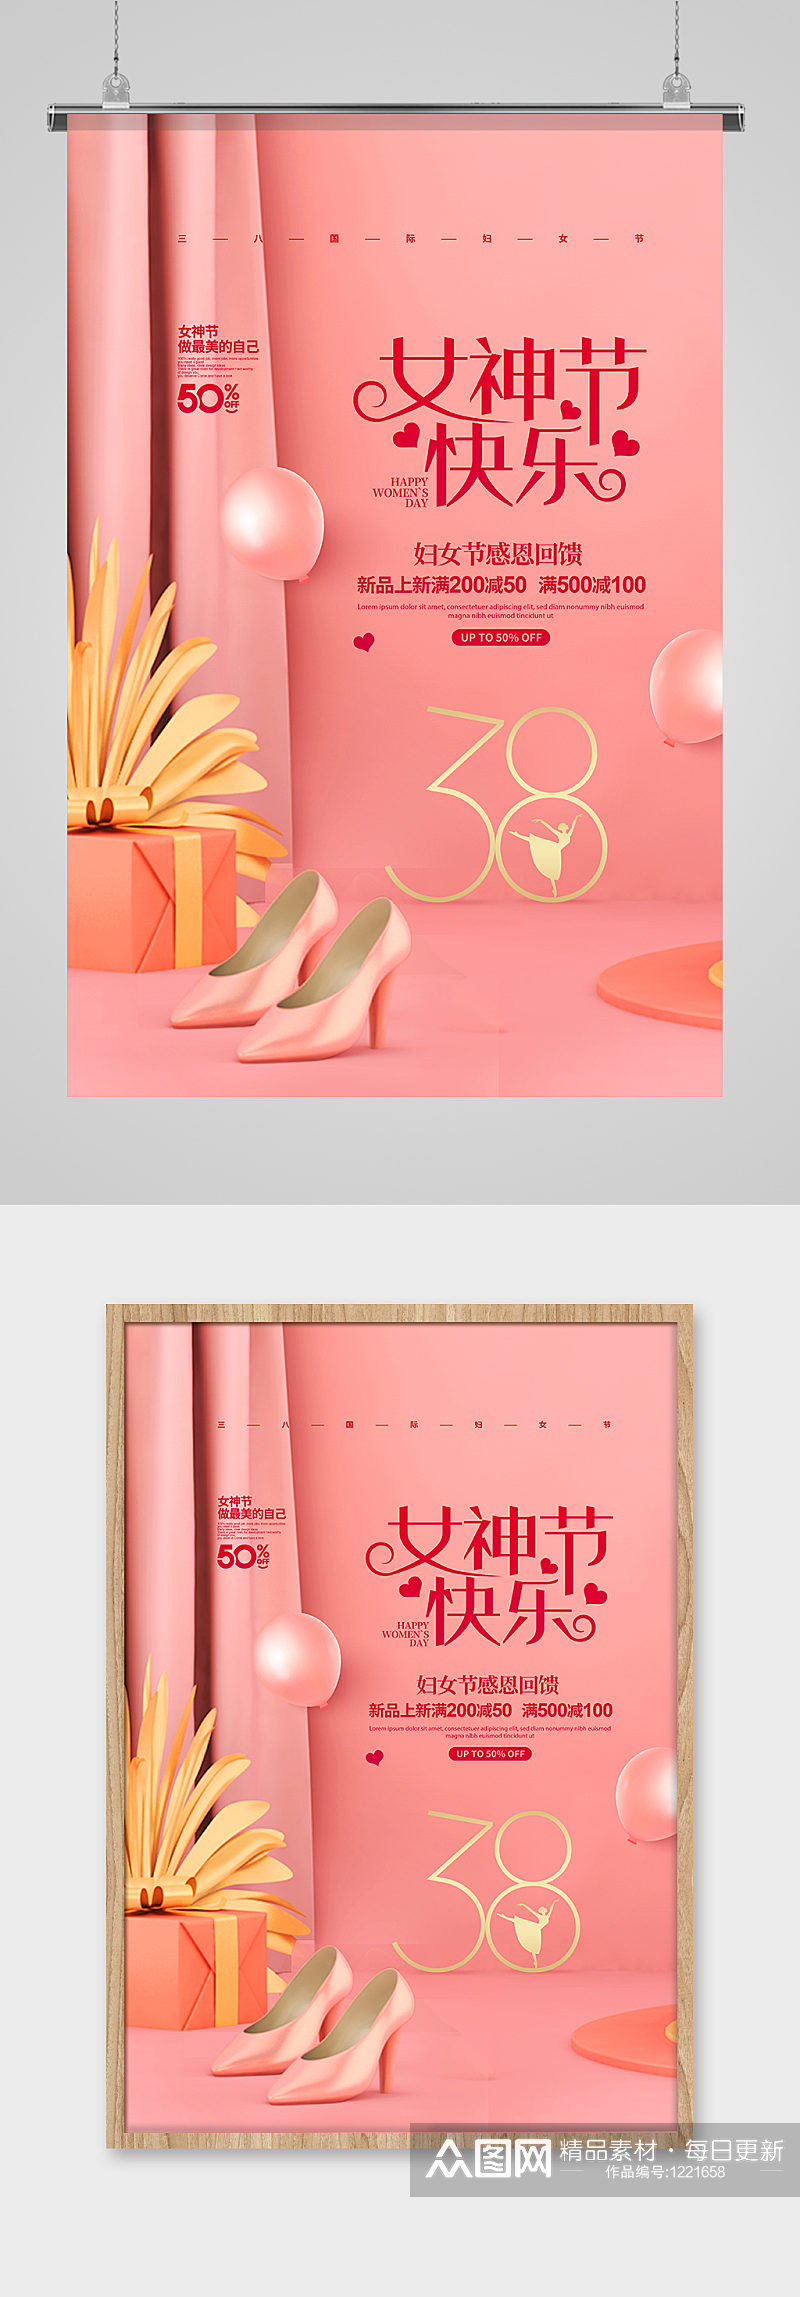 简约女神节快乐38妇女节促销宣传海报素材